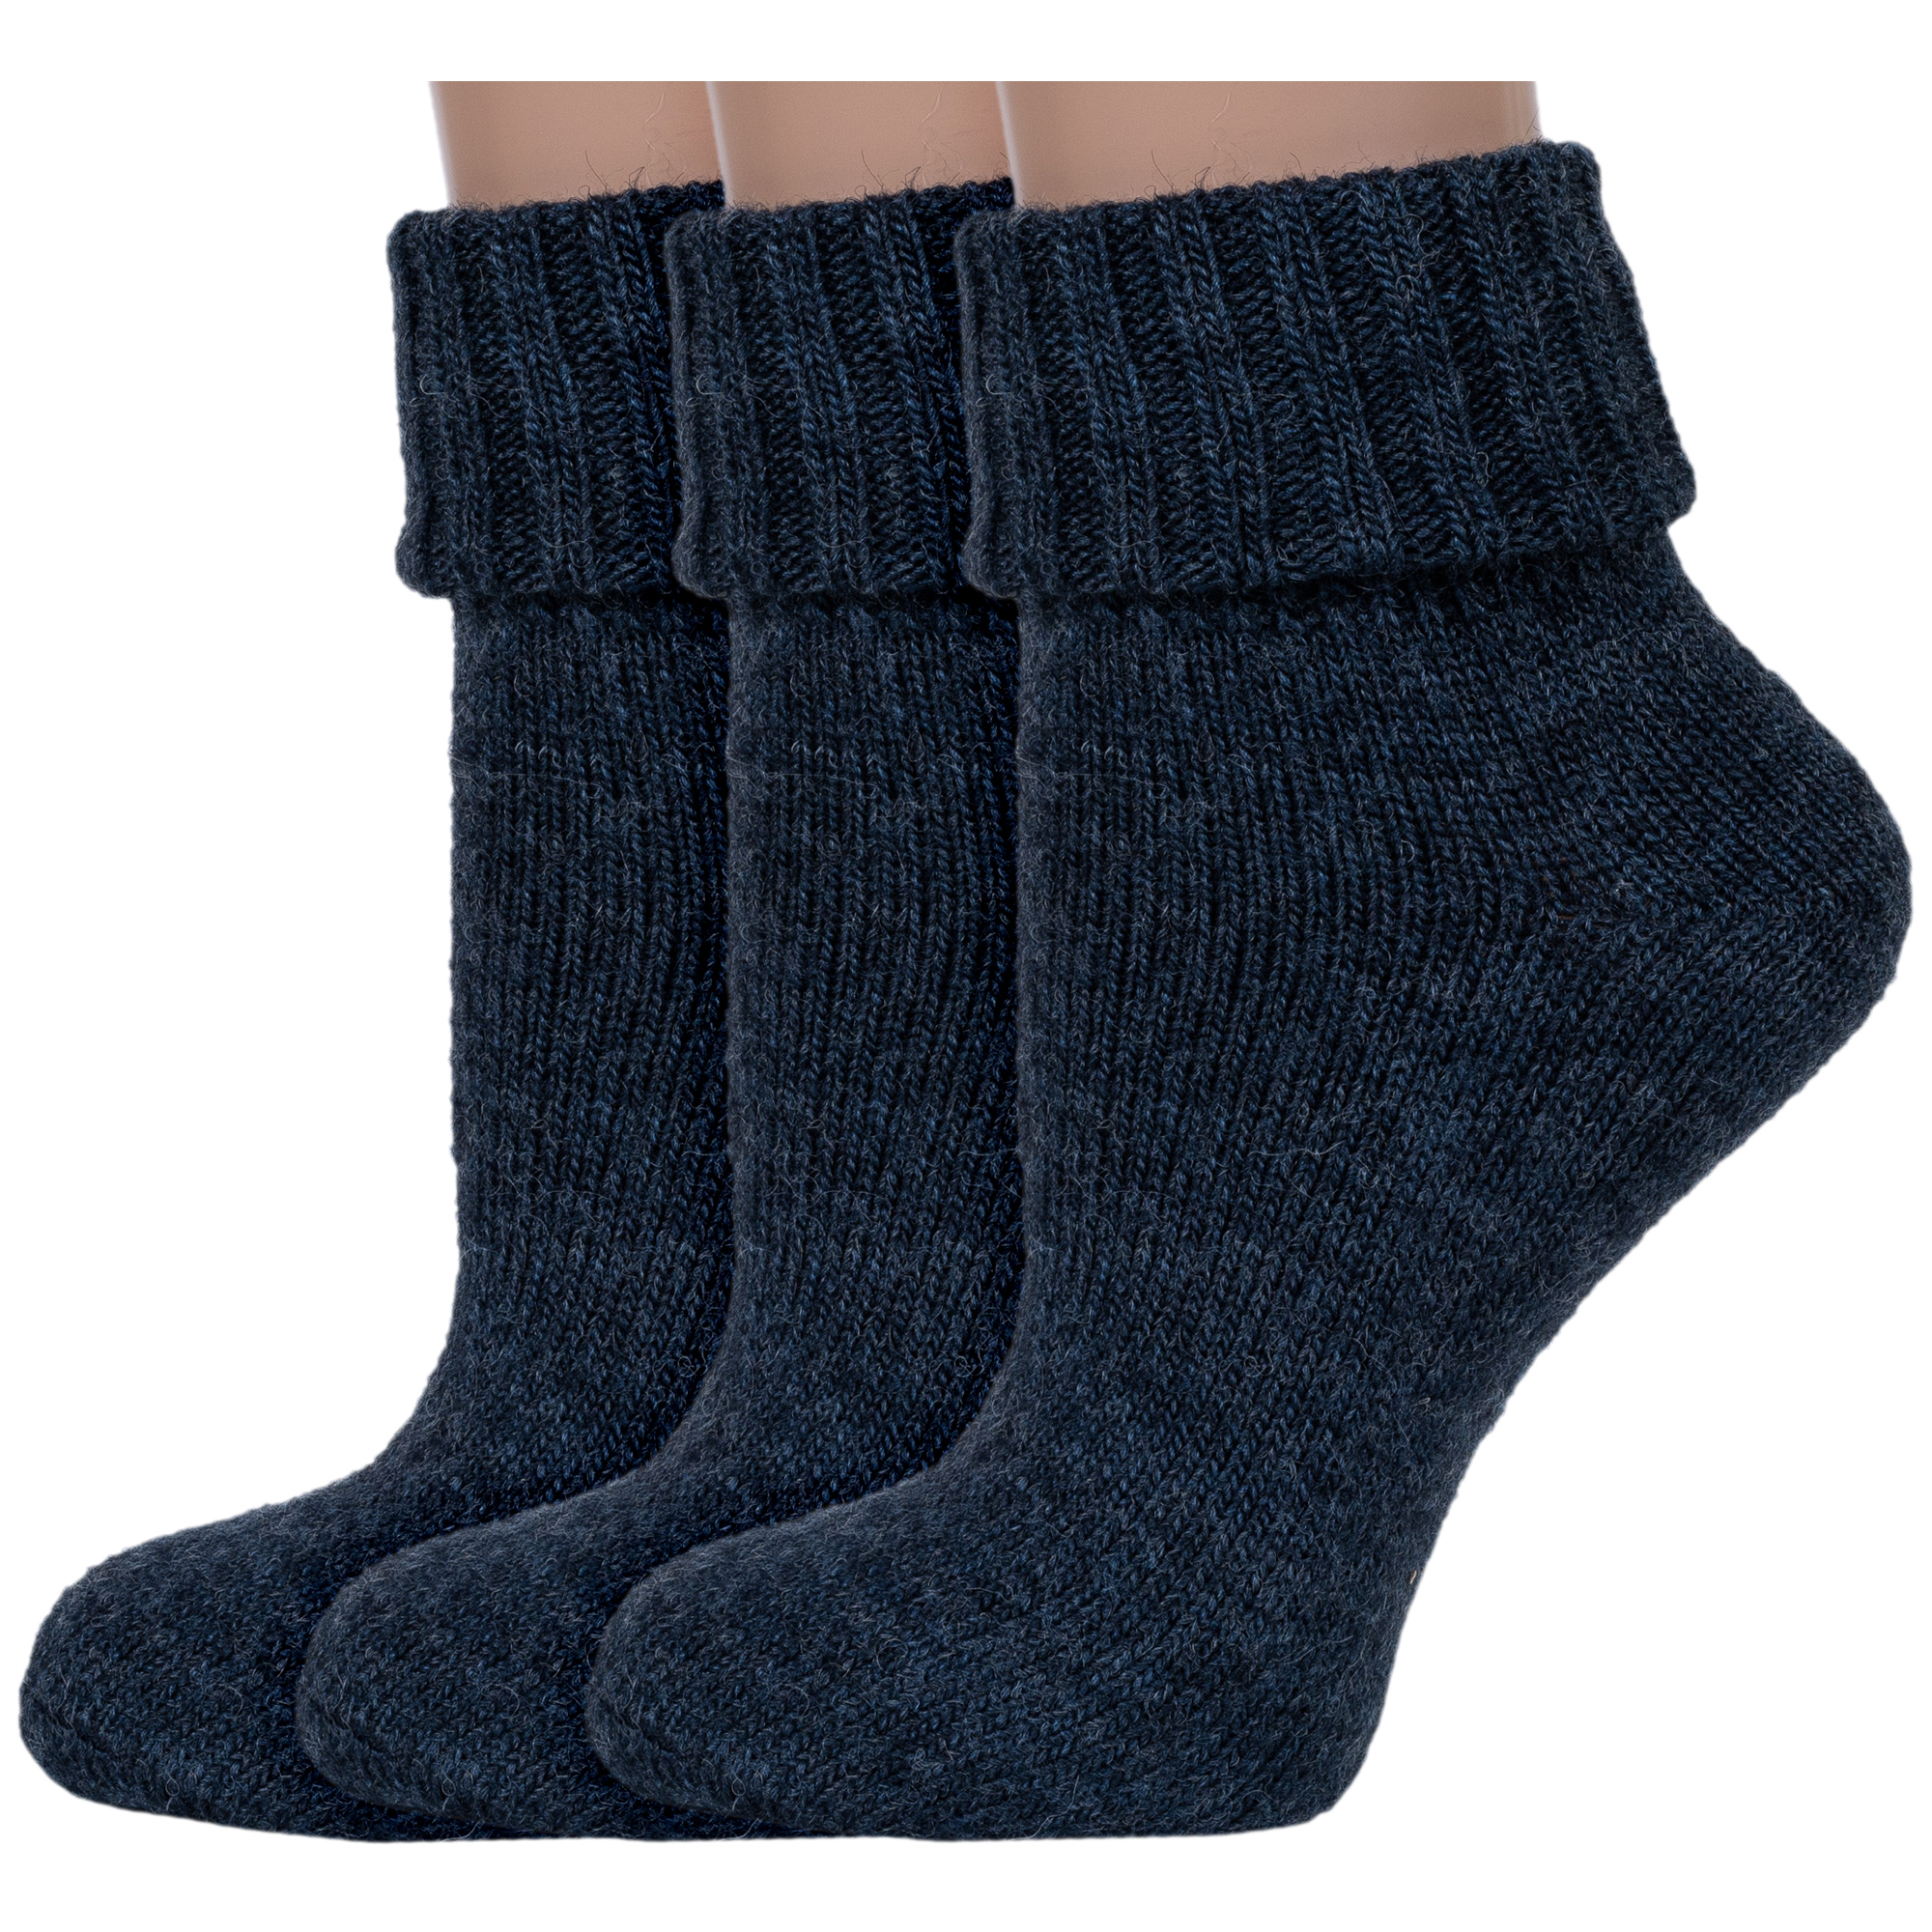 Комплект носков женских Rusocks 3-Ж-195 синих 23-25